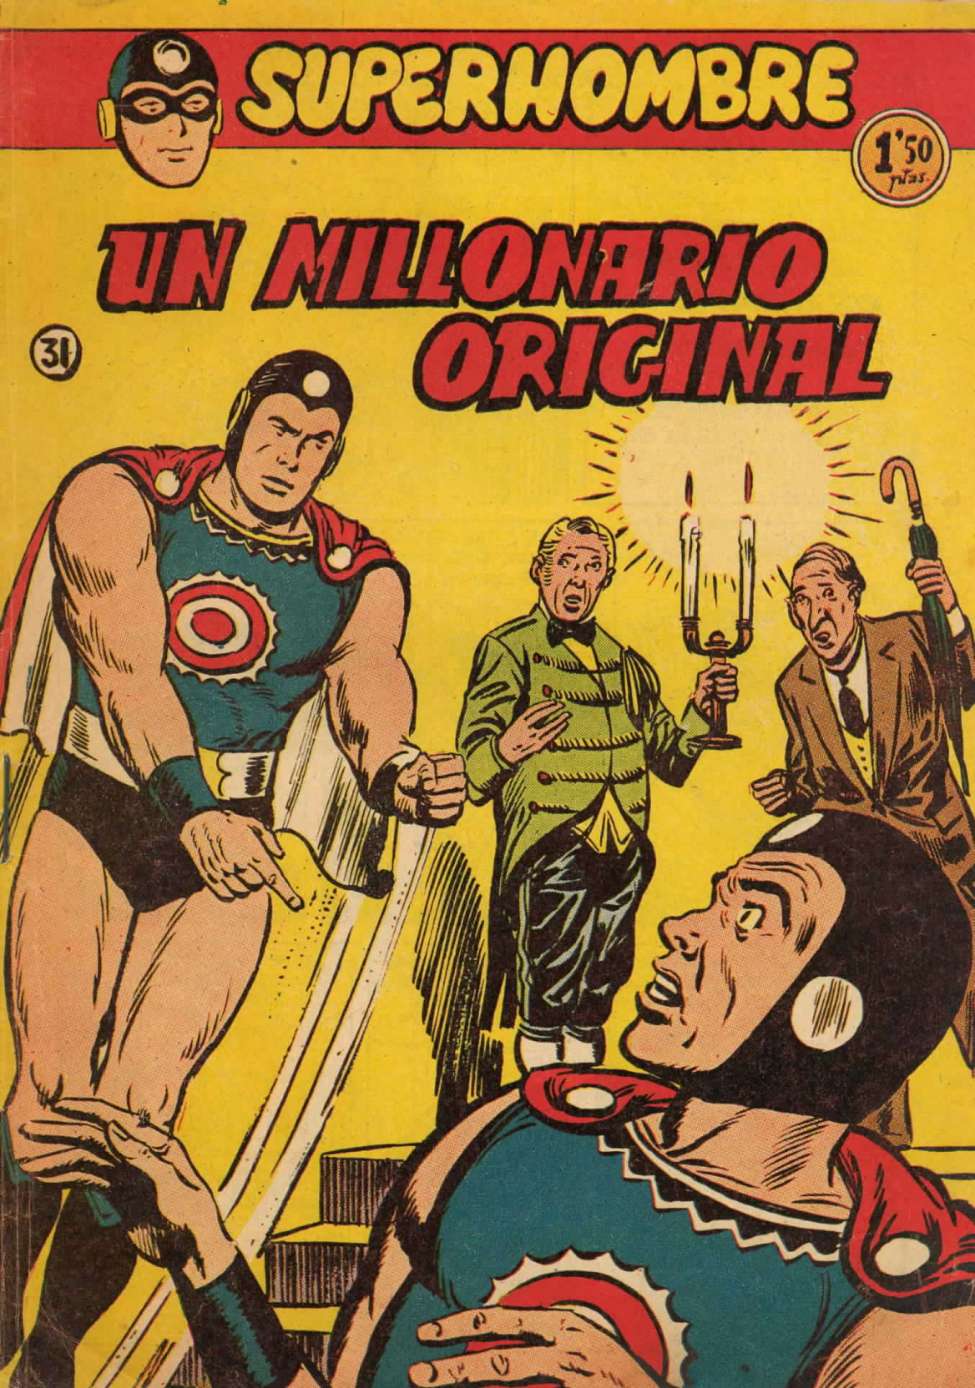 Comic Book Cover For SuperHombre 31 Un millonario original